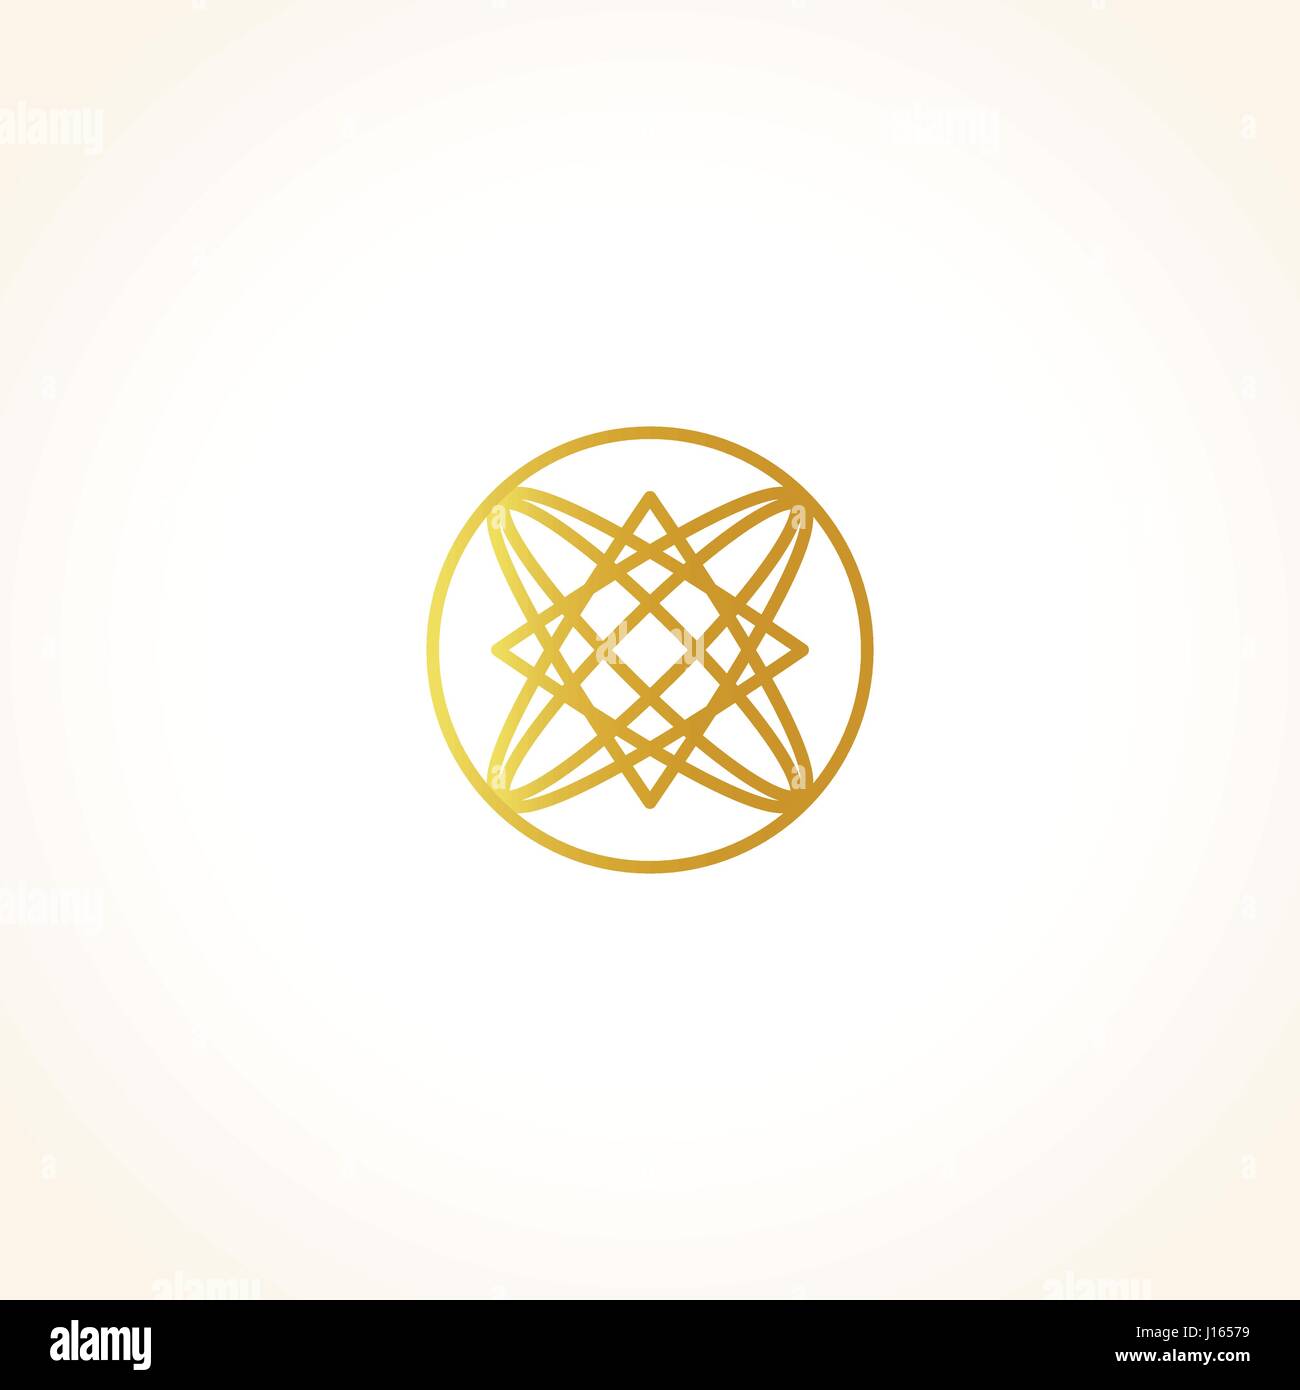 Isolierte abstrakt Runde Form goldene Farbe Logo, dekorative luxuriösen gold Logo, Vektor-Illustration Blumenmuster auf schwarzem Hintergrund Stock Vektor